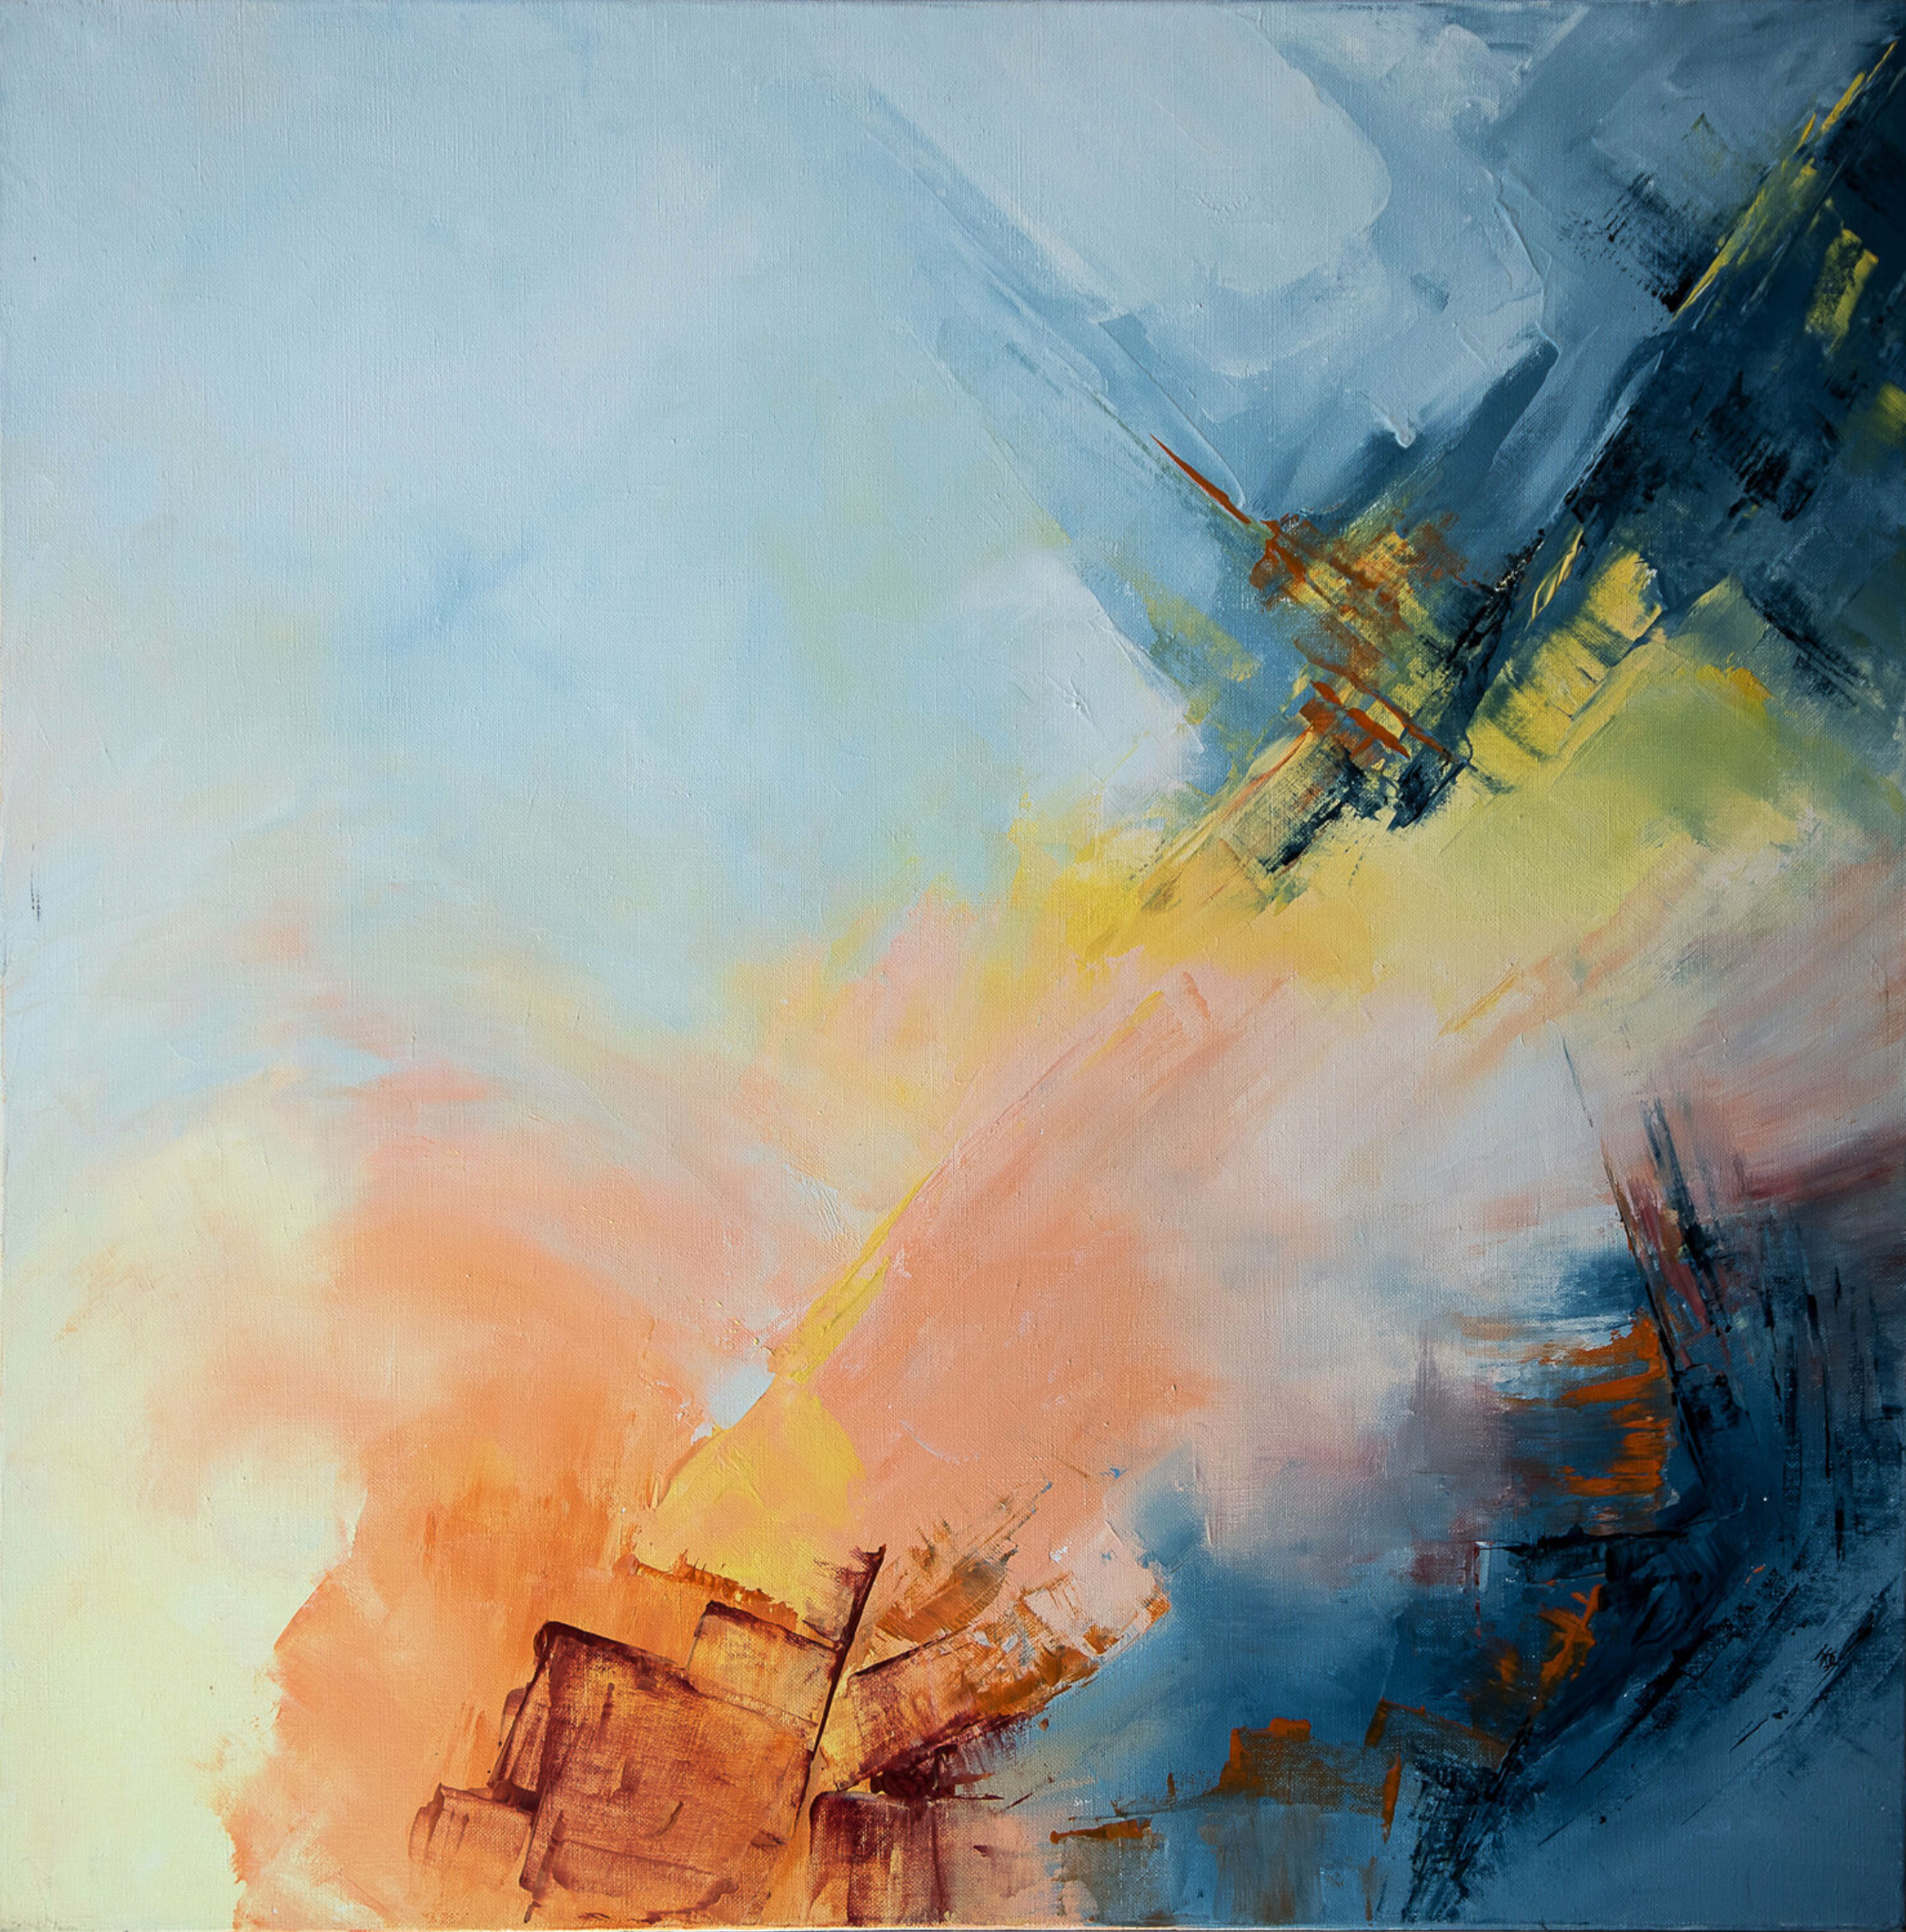 Il dipinto astratto "Un jour une vie" di Françoise Dugourd-Caput mostra le fasi visualizzate attraverso le zone di colori diversi che possono evocare l'inizio di una vita e il viaggio verso la sua fine.